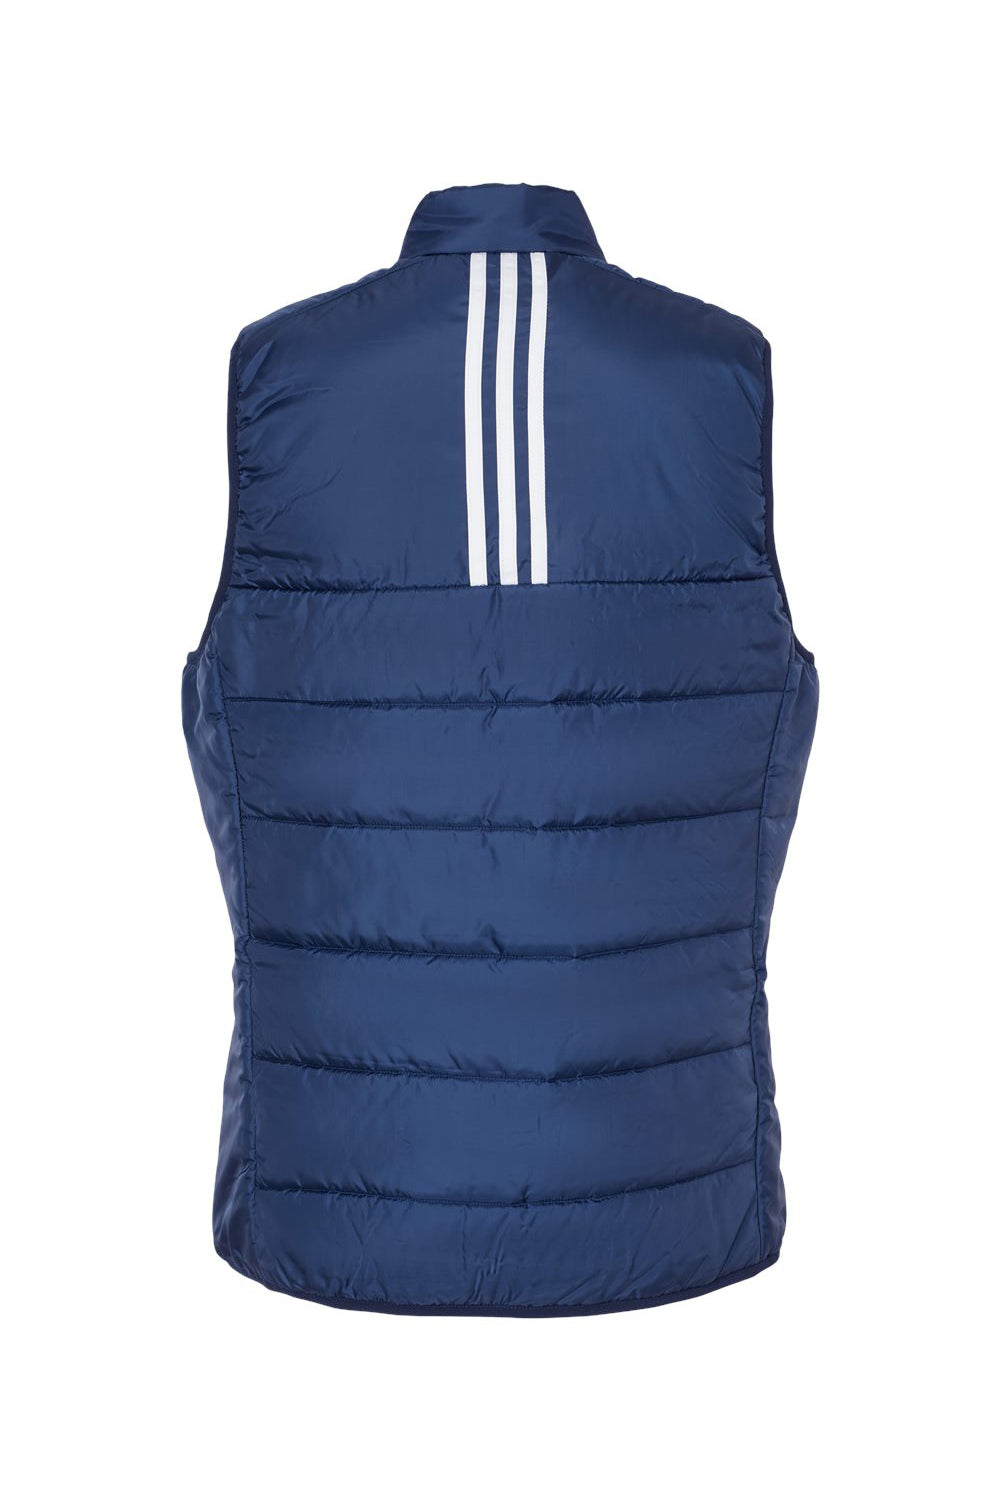 Adidas A573 Womens Full Zip Puffer Vest Team Navy Blue Flat Back